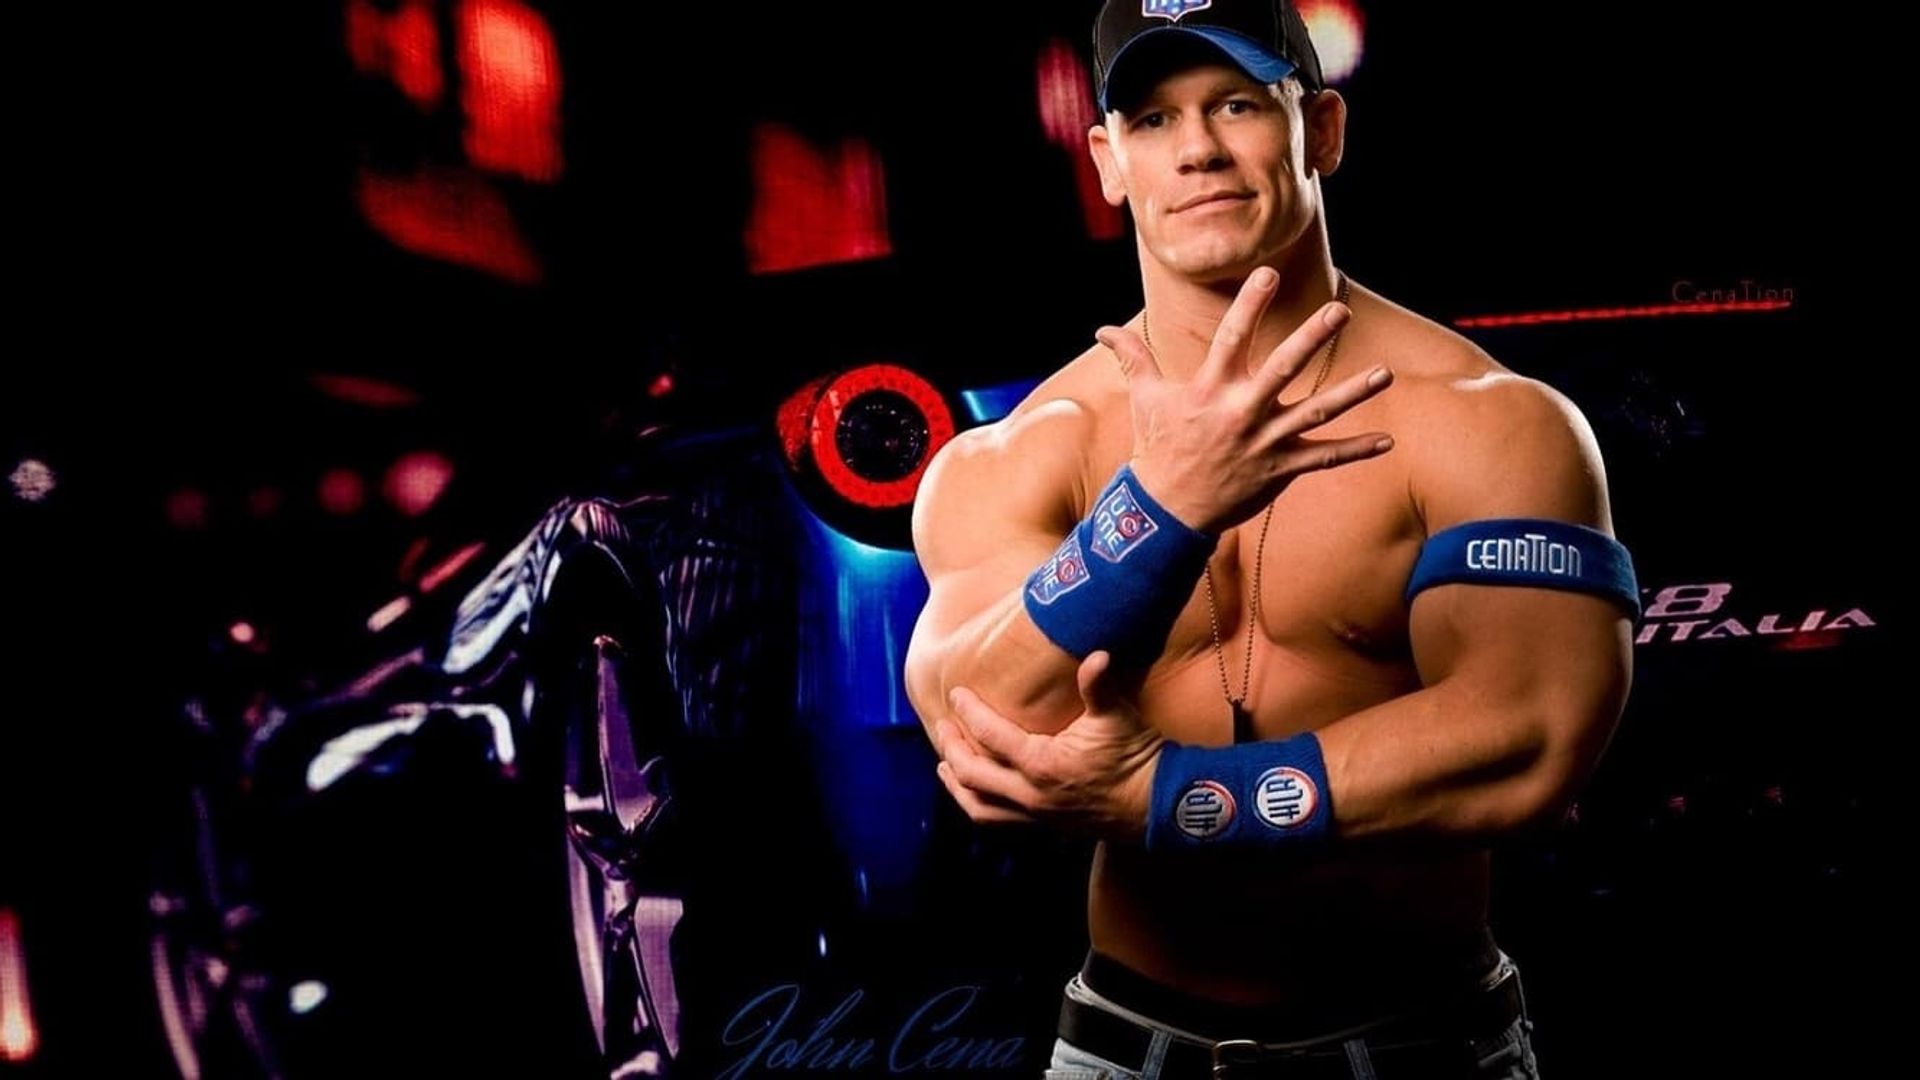 The John Cena Experience background